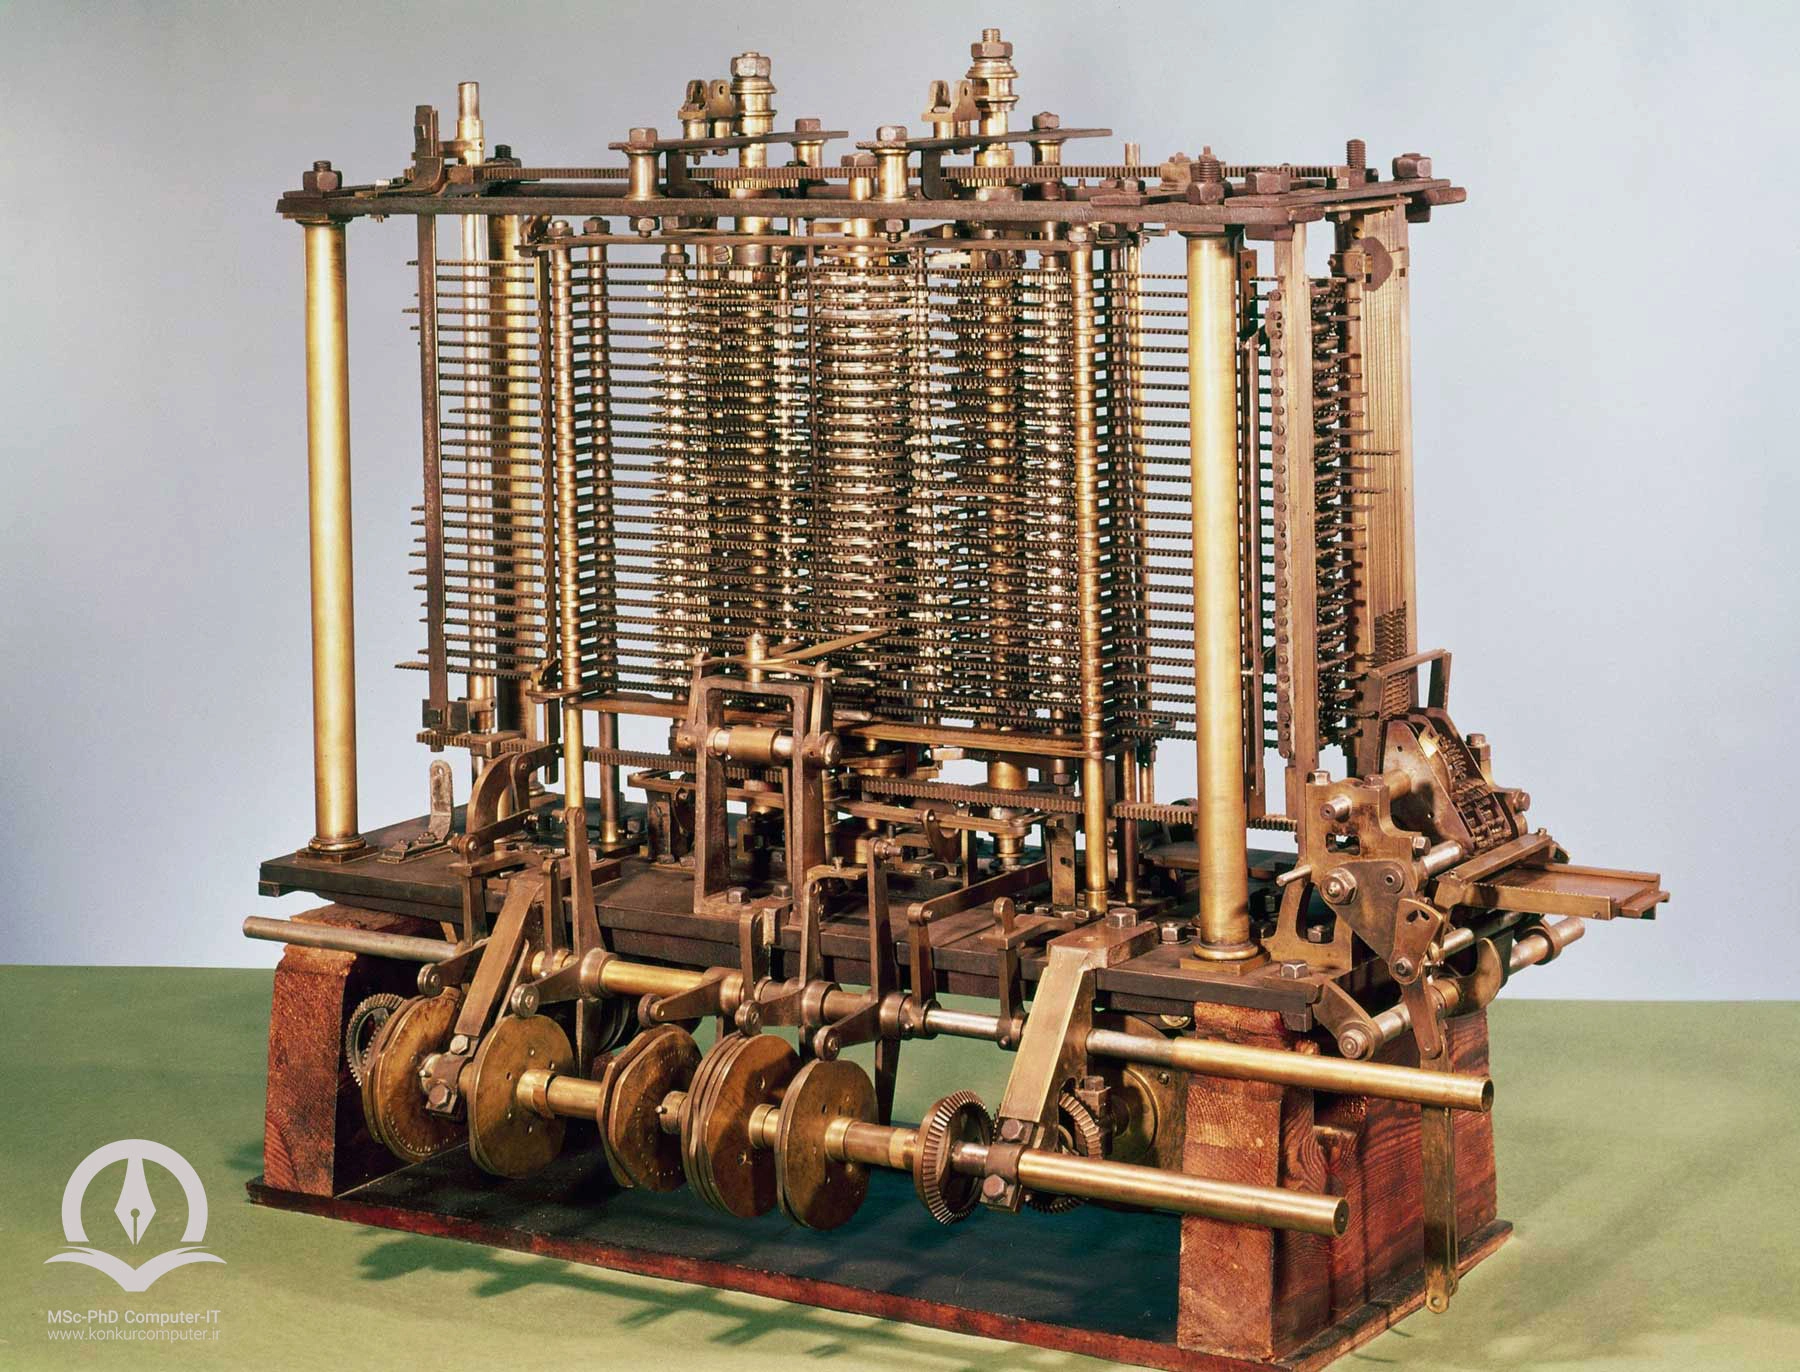 بخشی از ماشین محاسبه با مکانیزم چاپ موتور تحلیلی، ساخته شده توسط چارلز بابیج که در موزه علوم (لندن) به نمایش گذاشته شده است